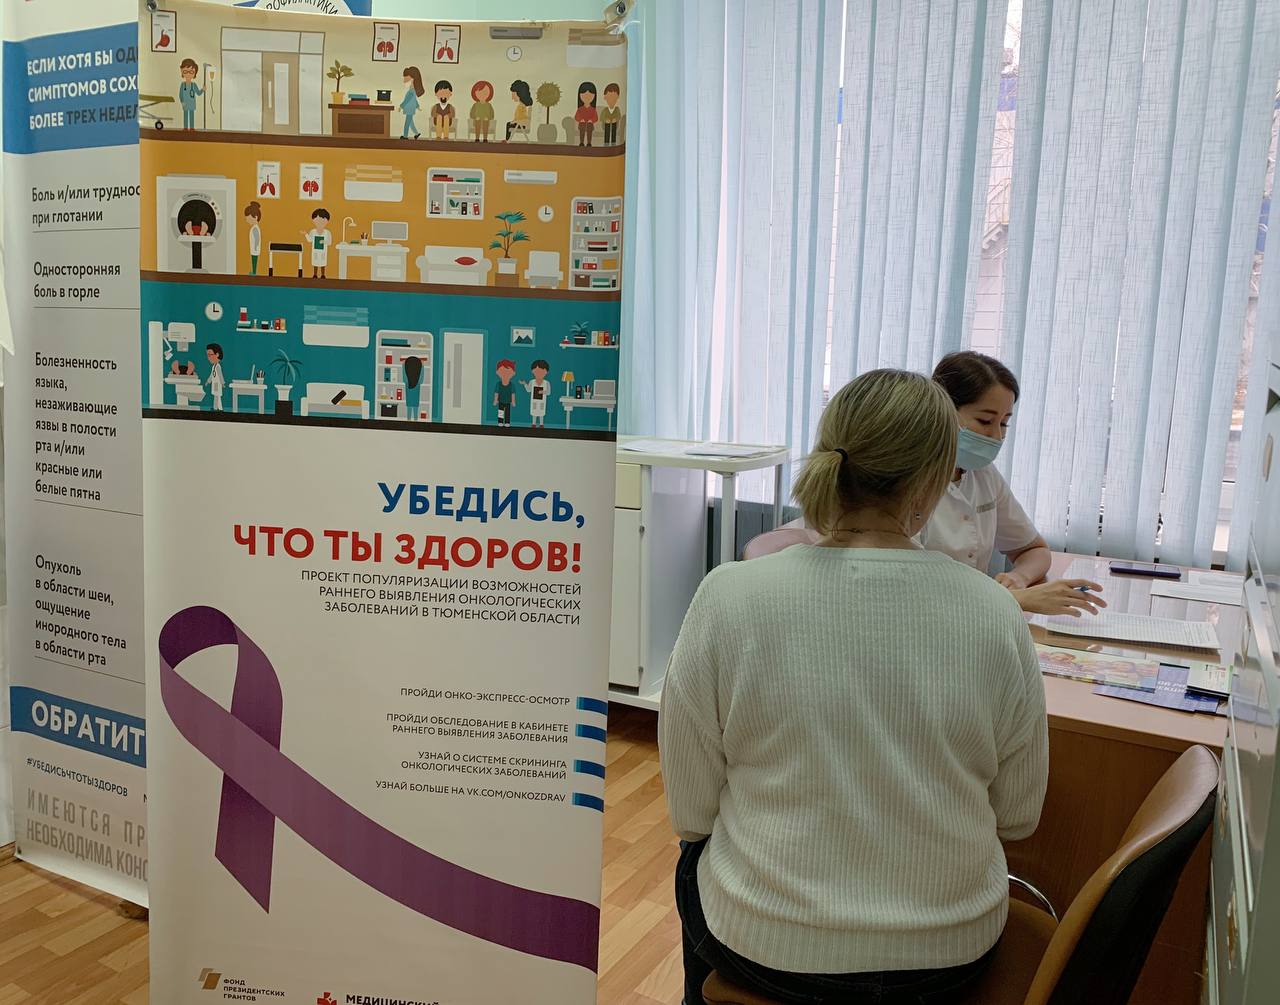 Бригада врачей-онкологов Медицинского города посетила OОО "Газпром проектирование" с целью профилактического осмотра сотрудников предприятия